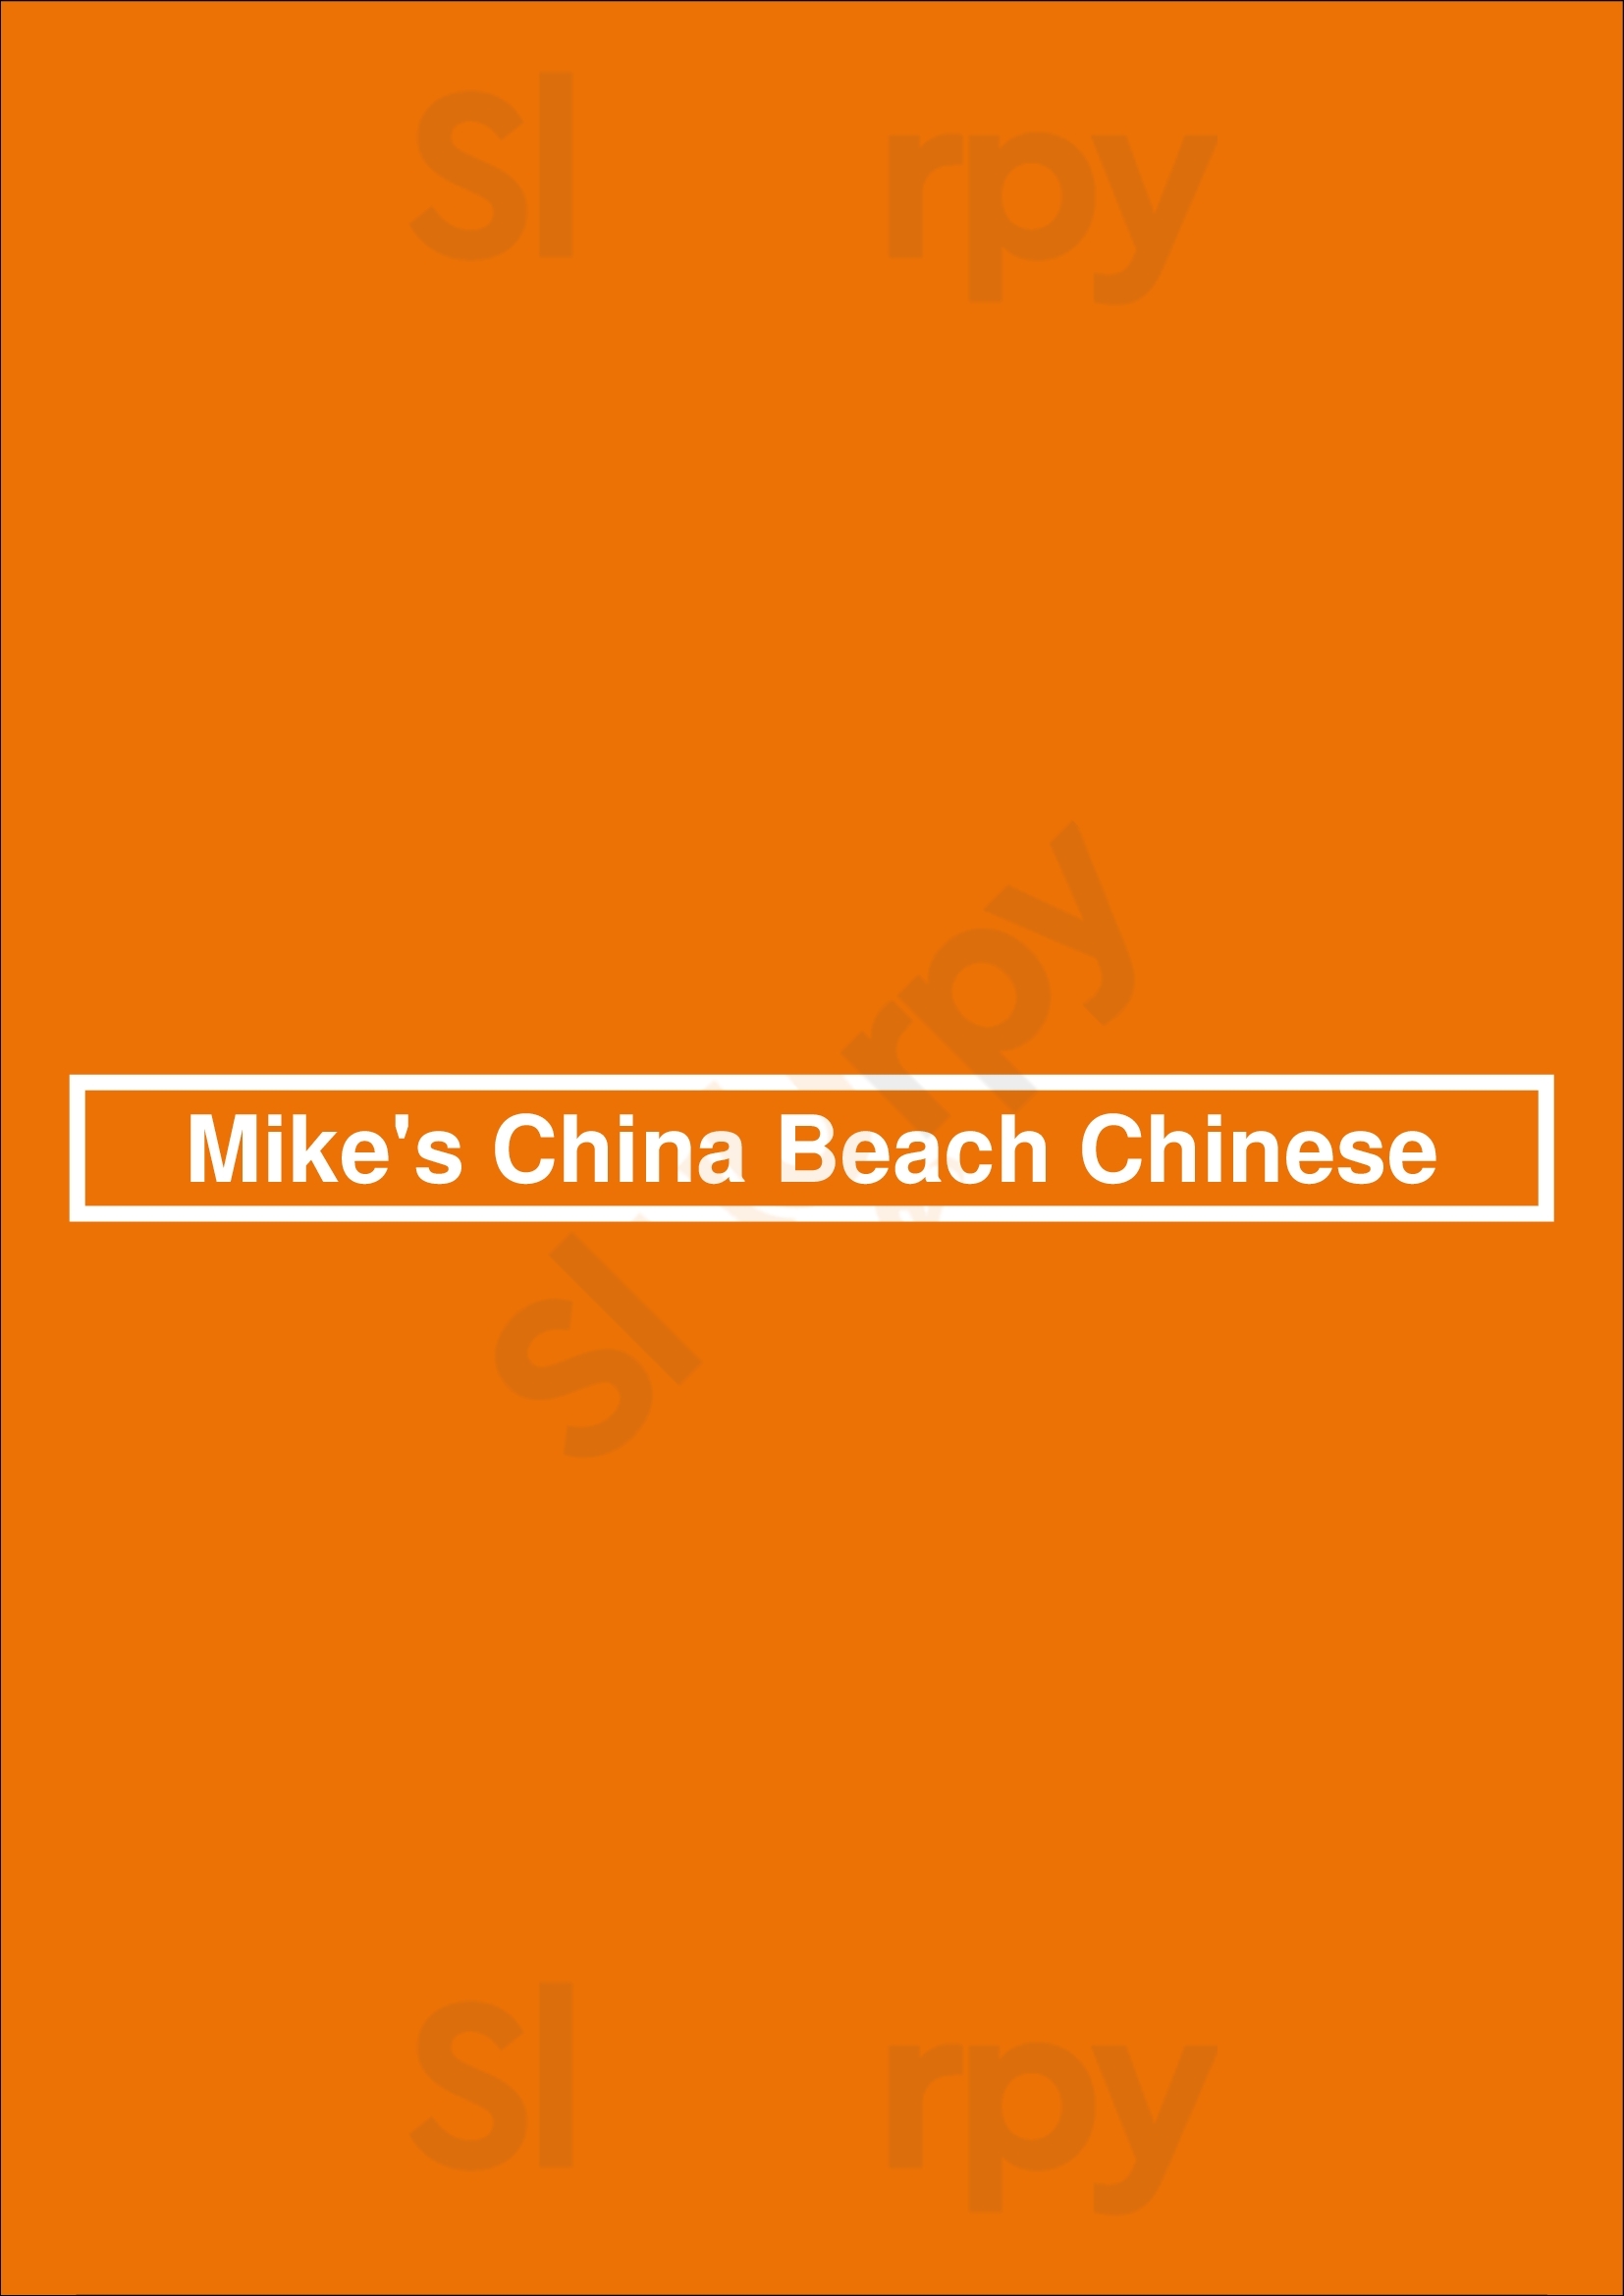 Mike's China Beach Chinese Miami Beach Menu - 1